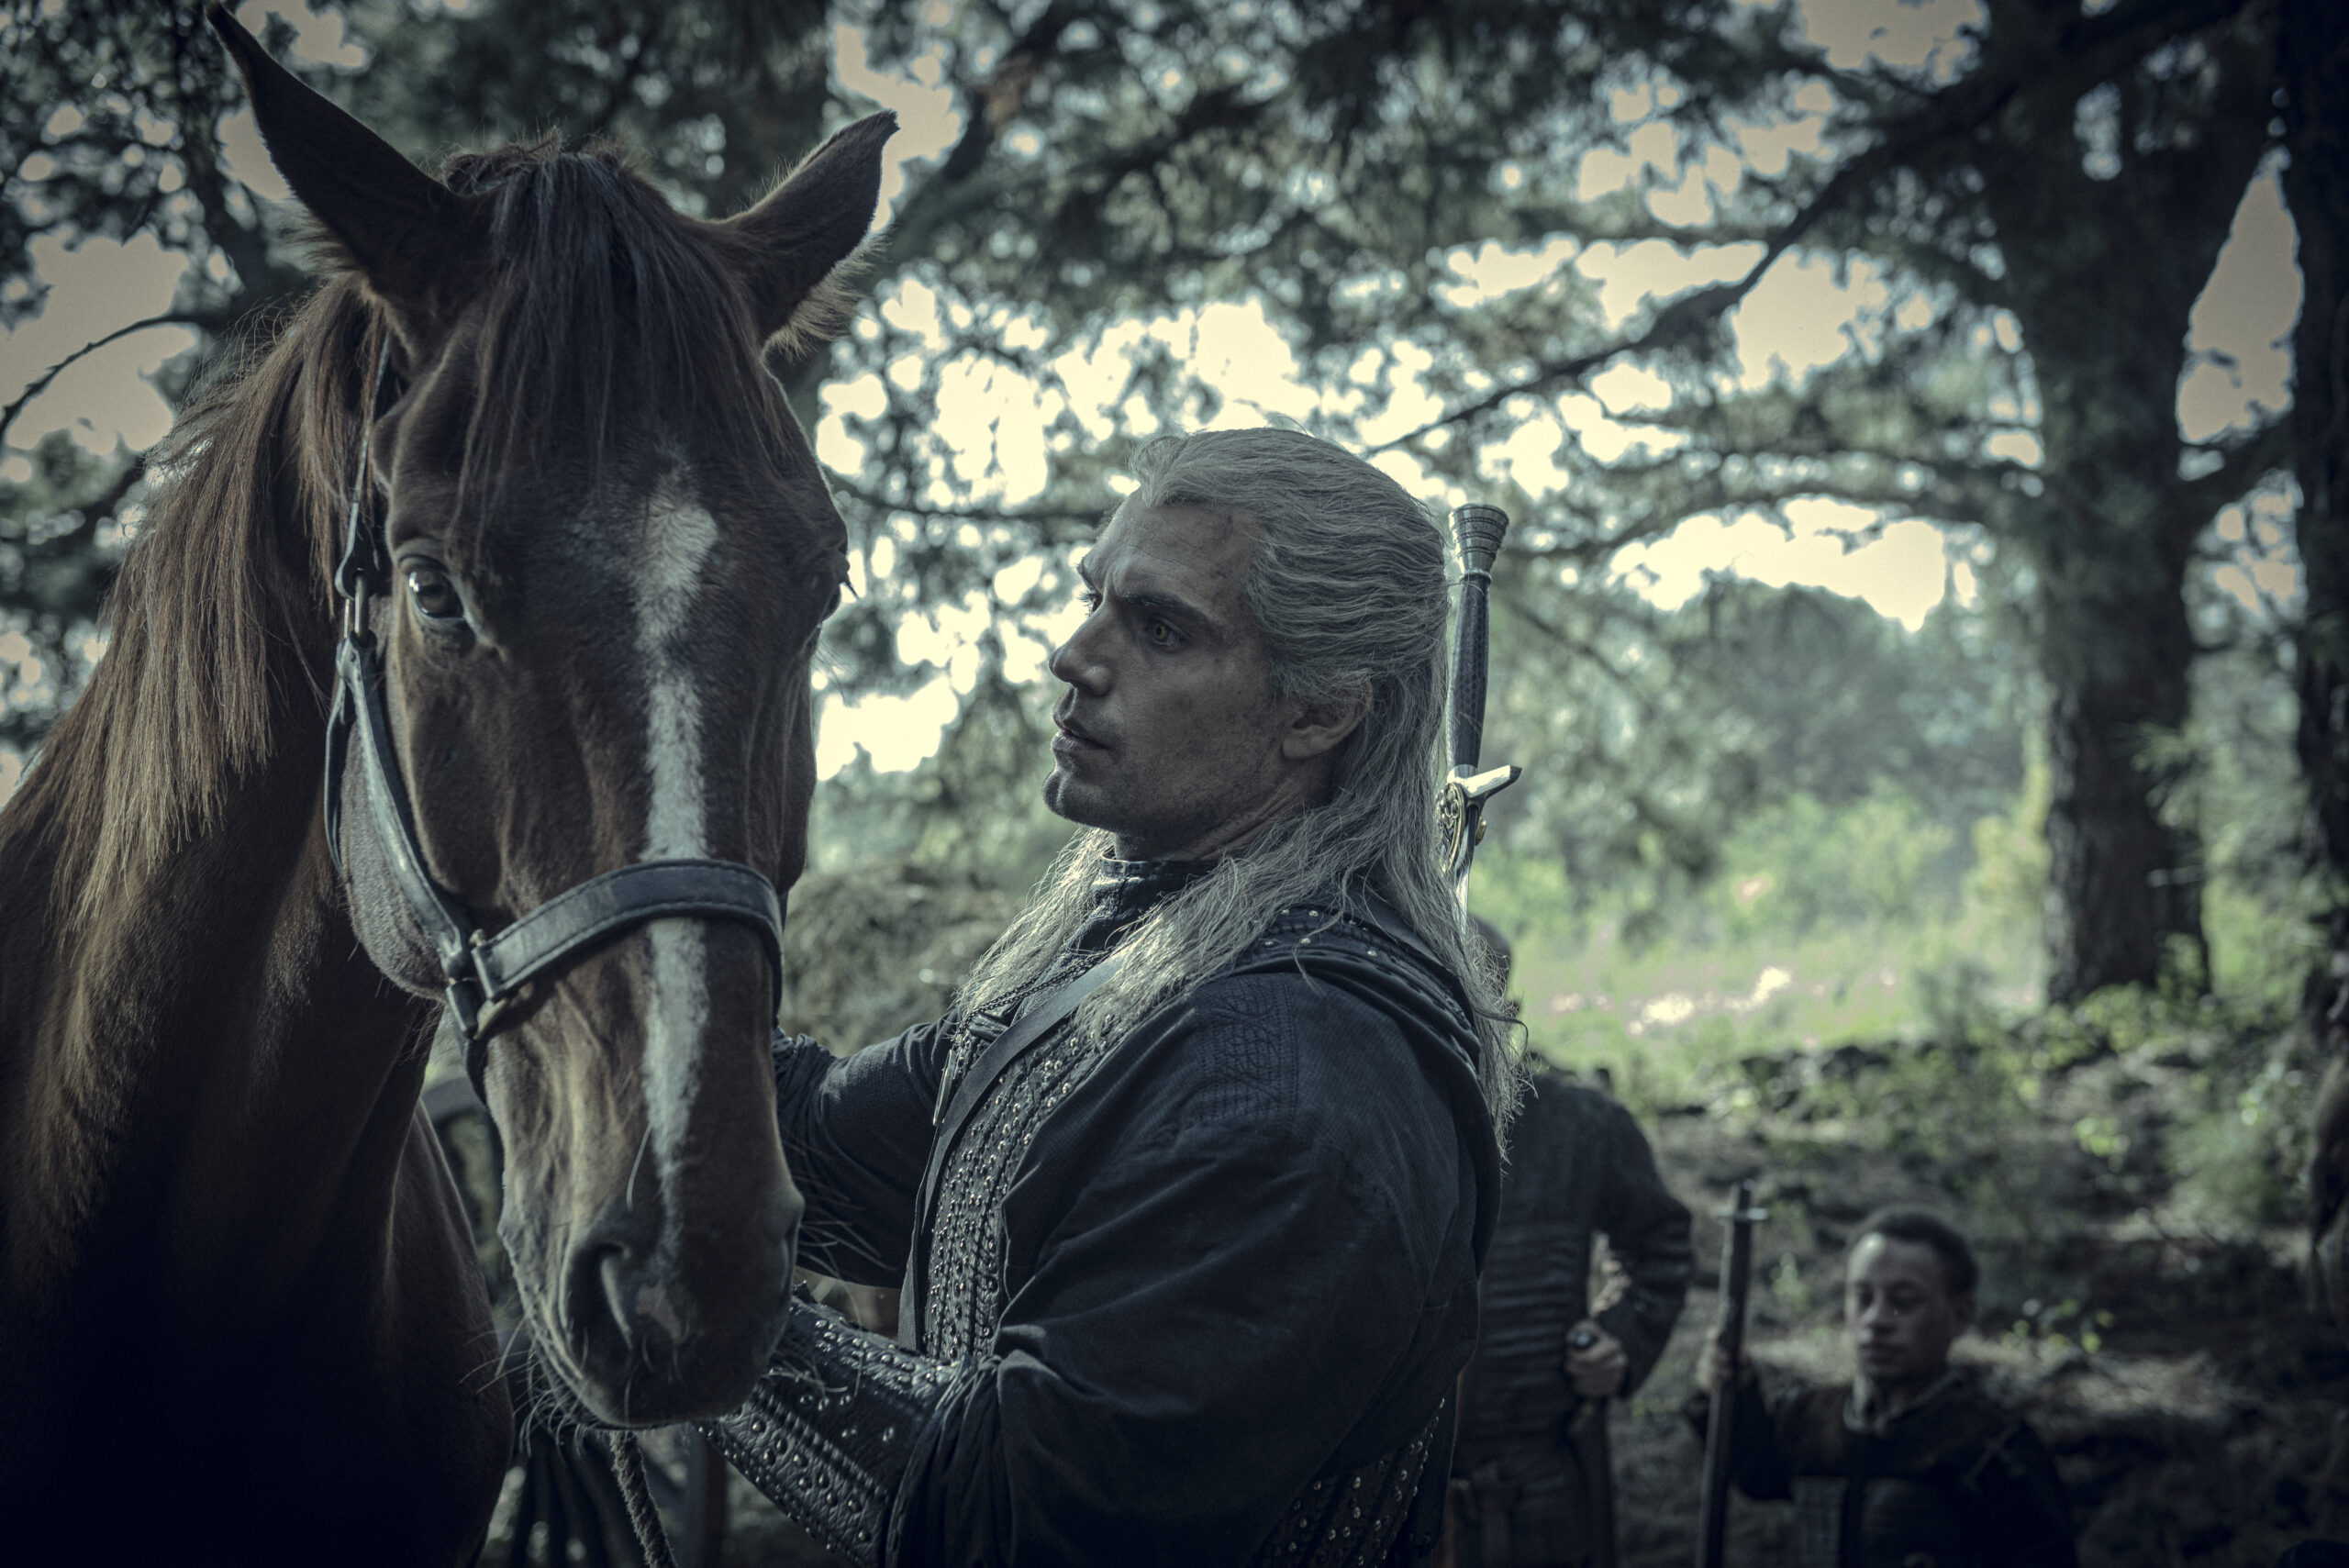 Geralt (Henry Cavill) calms Roach in The Witcher Season 1 Episode 6 "Rare Species" (2019) via Netflix